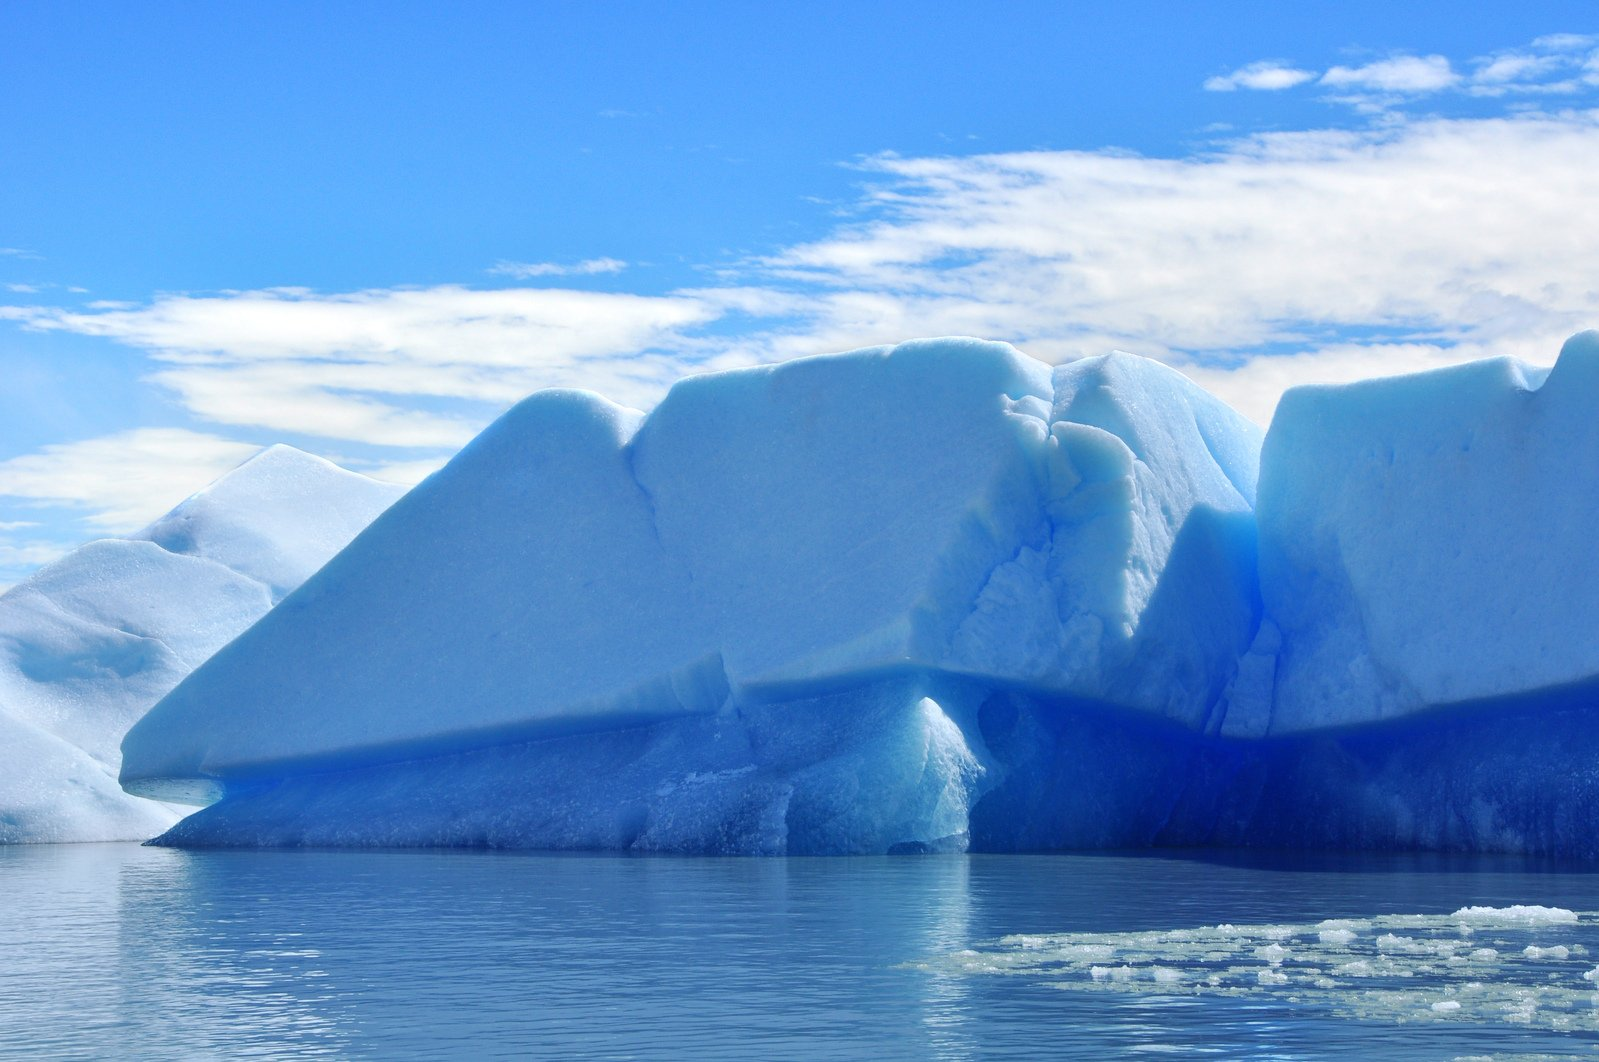 Арктика Северный Ледовитый океан. Северный Ледовитый океан полюс. Ледники Северного Ледовитого океана. Айсберги Северного Ледовитого океана. Северный ледяной океан